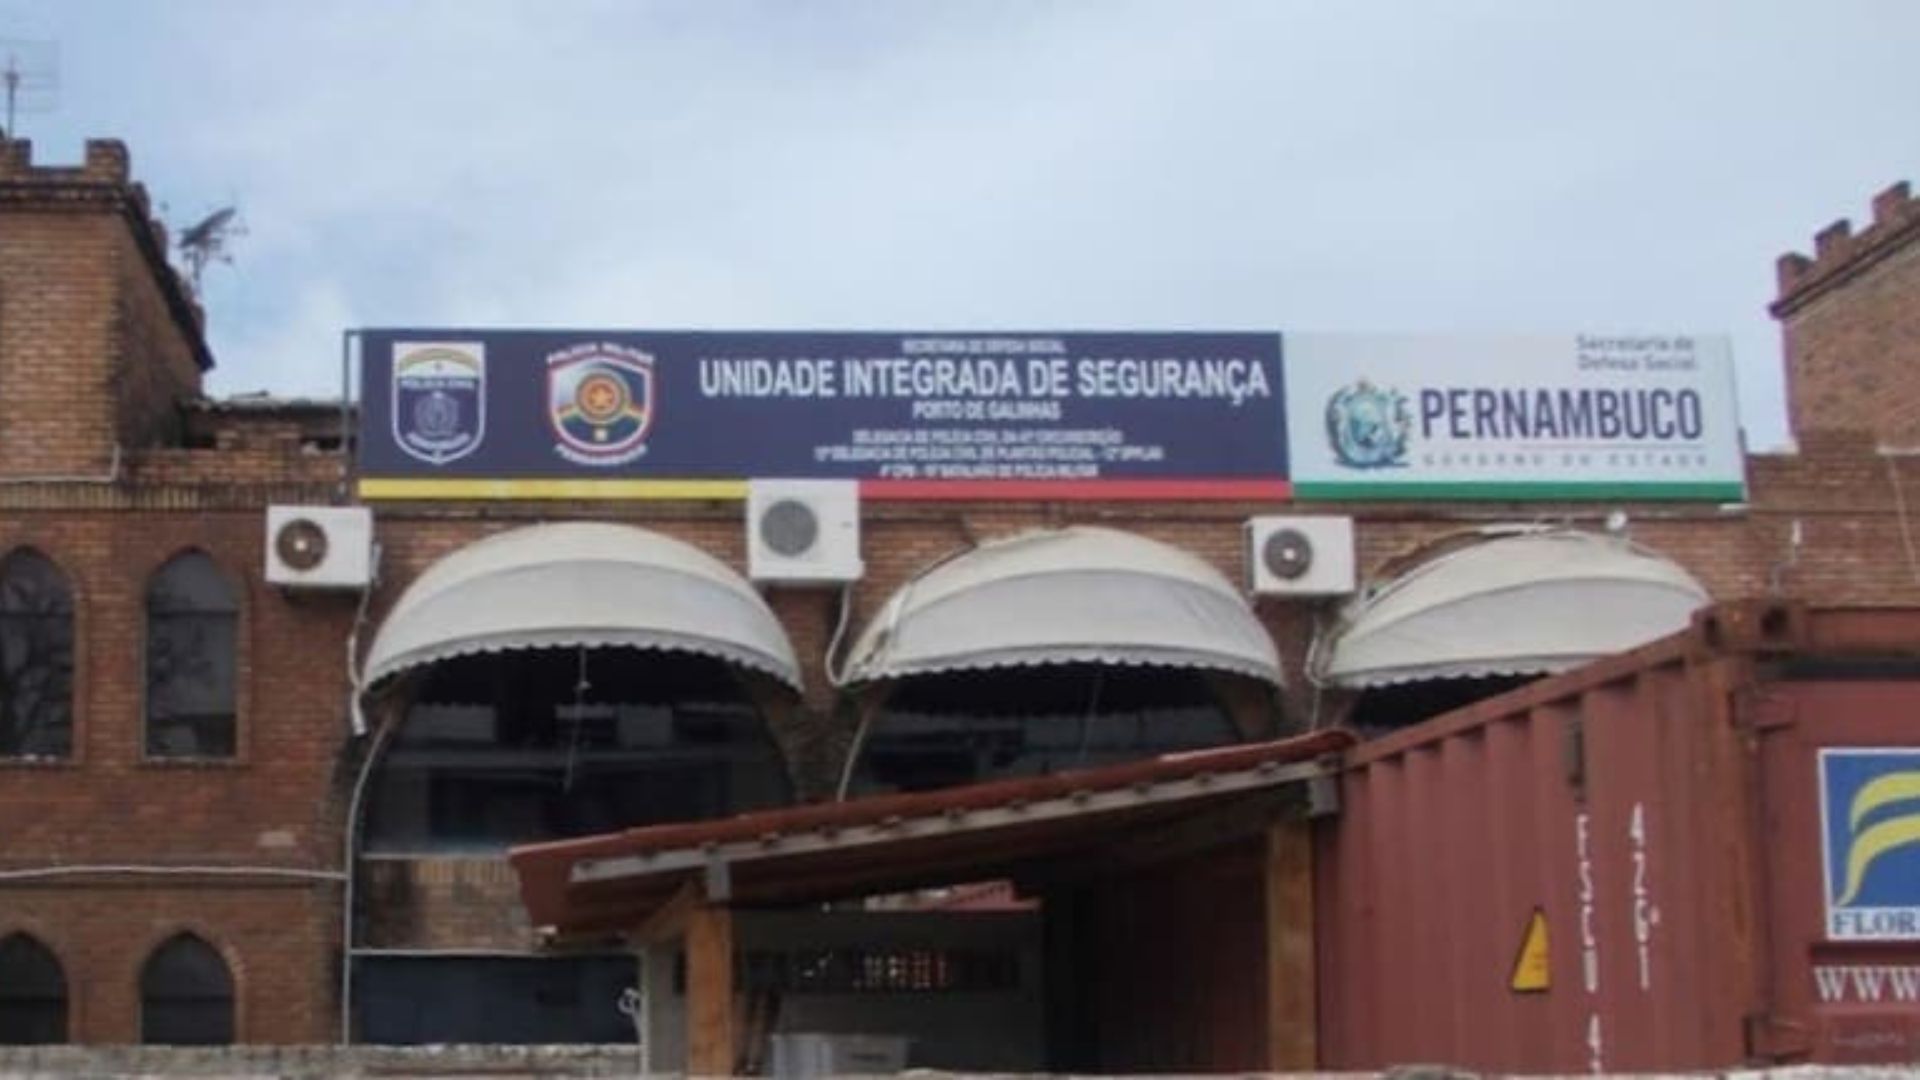 PCPE afirma que delegacia em Porto de Galinhas funciona normalmente; veja nota.